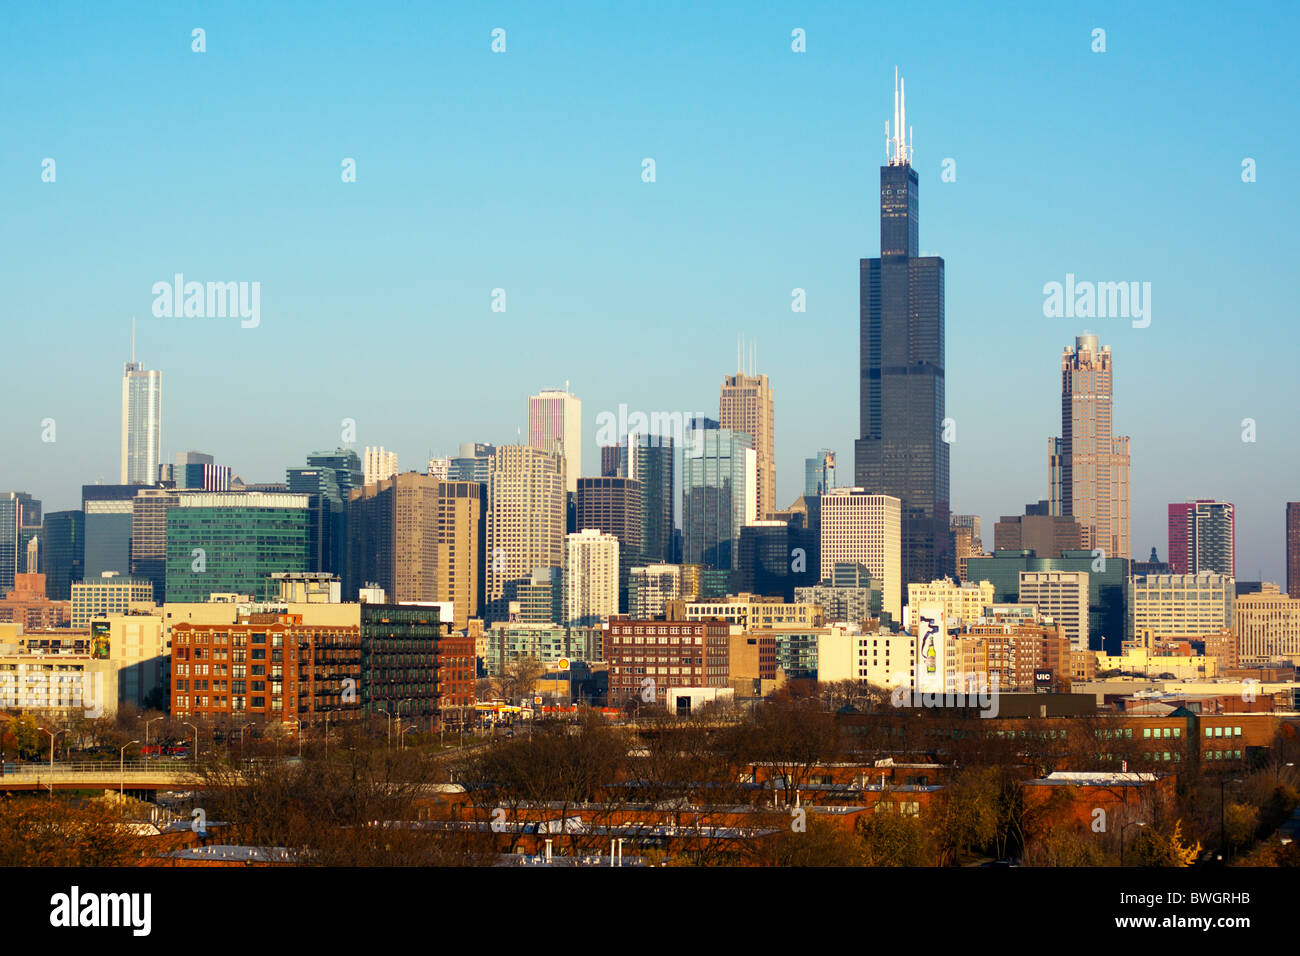 Die Sears/Willis Tower dominiert die Skyline von Chicago in dieser Saison Herbst-Ansicht von der Westseite der Stadt. Stockfoto